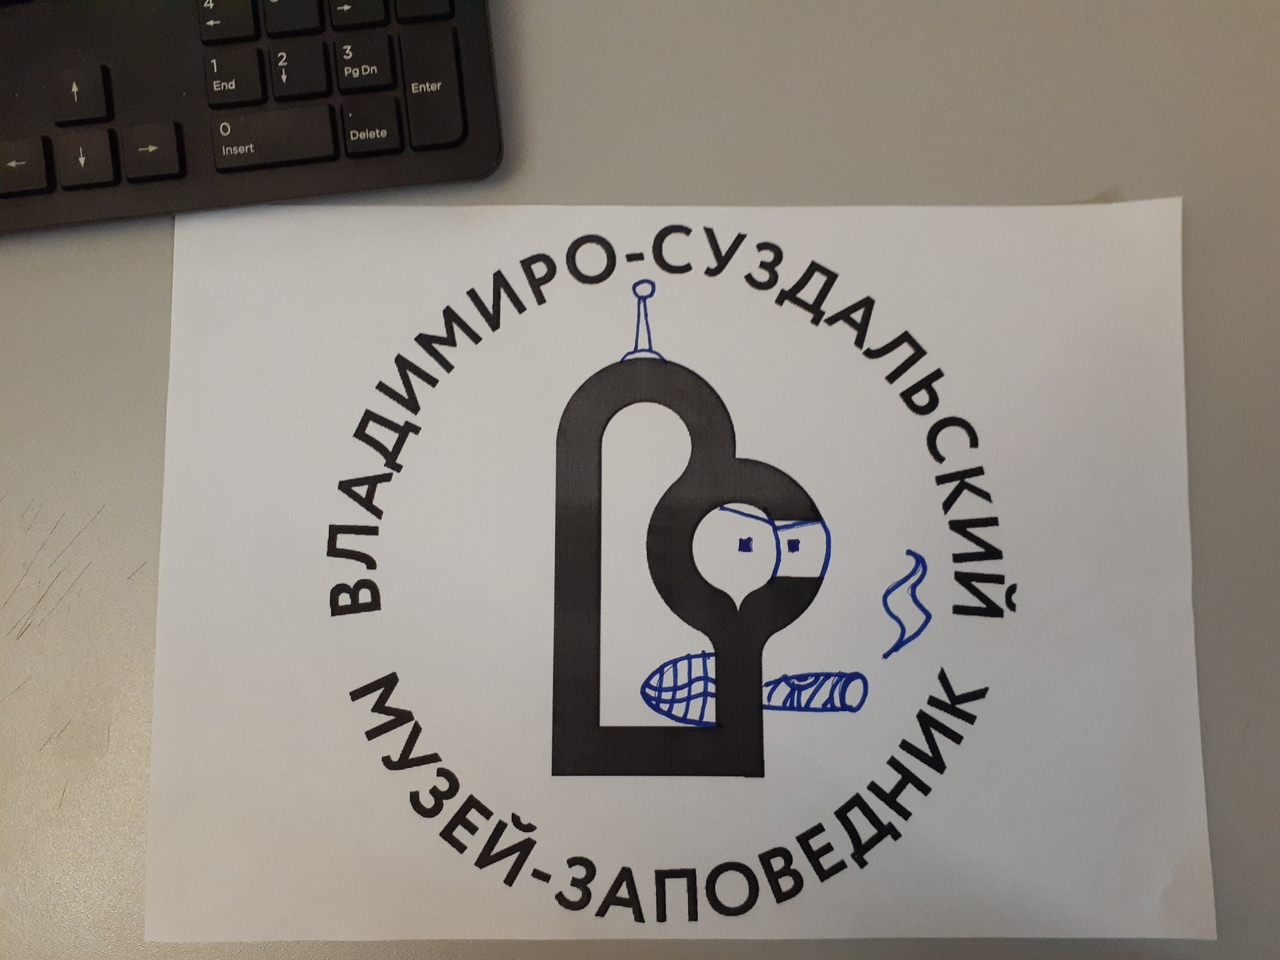 Владимирцы внесли нотку креатива в новый логотип ВСМЗ